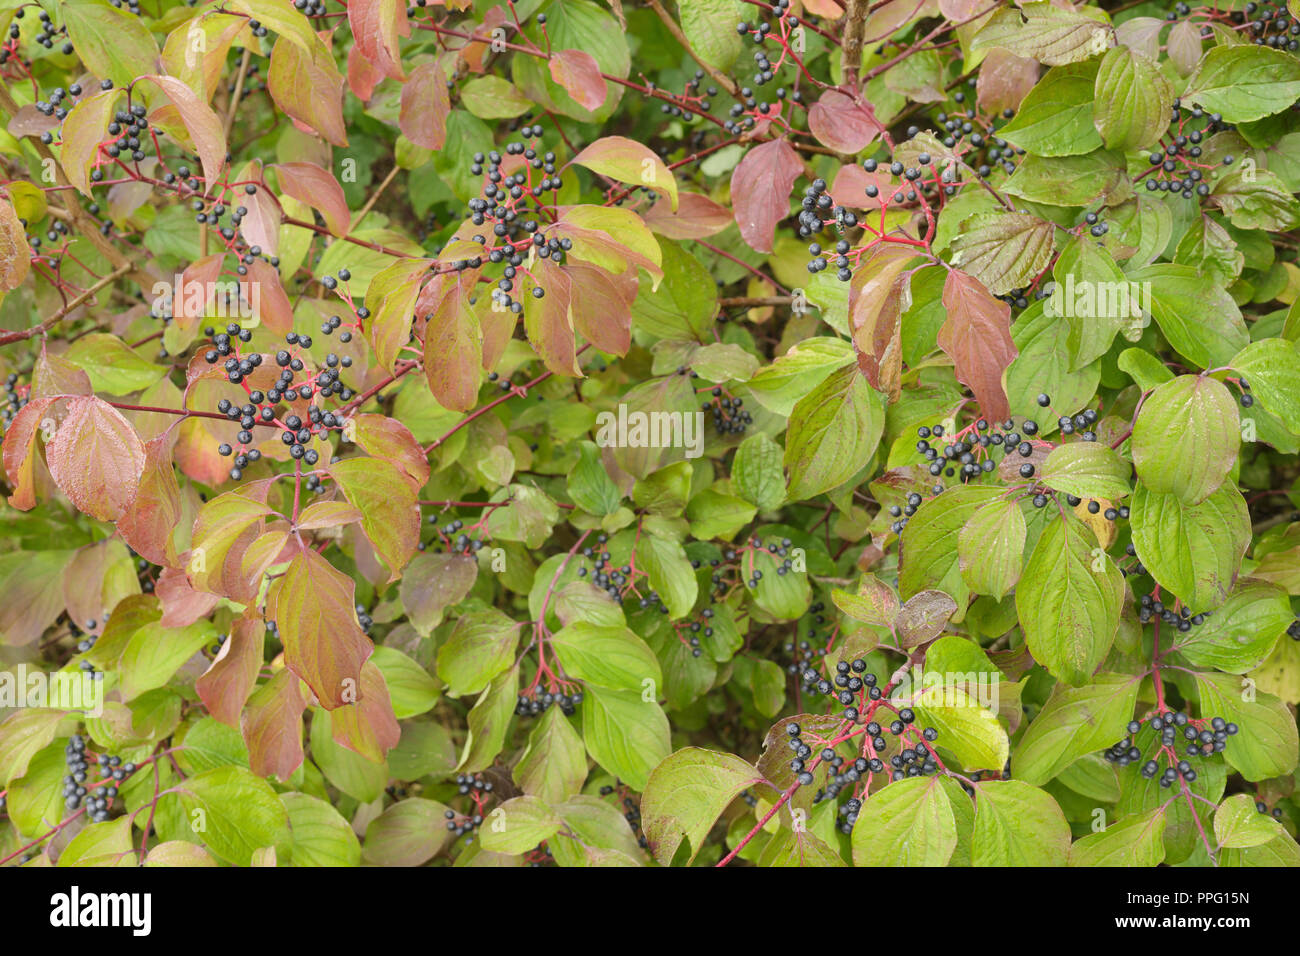 Gemeinsame Hartriegel (Cornus sanguinea) Früchte und Blätter im Herbst Farbe, wachsen in der Hecke, West Yorkshire, England, September Stockfoto